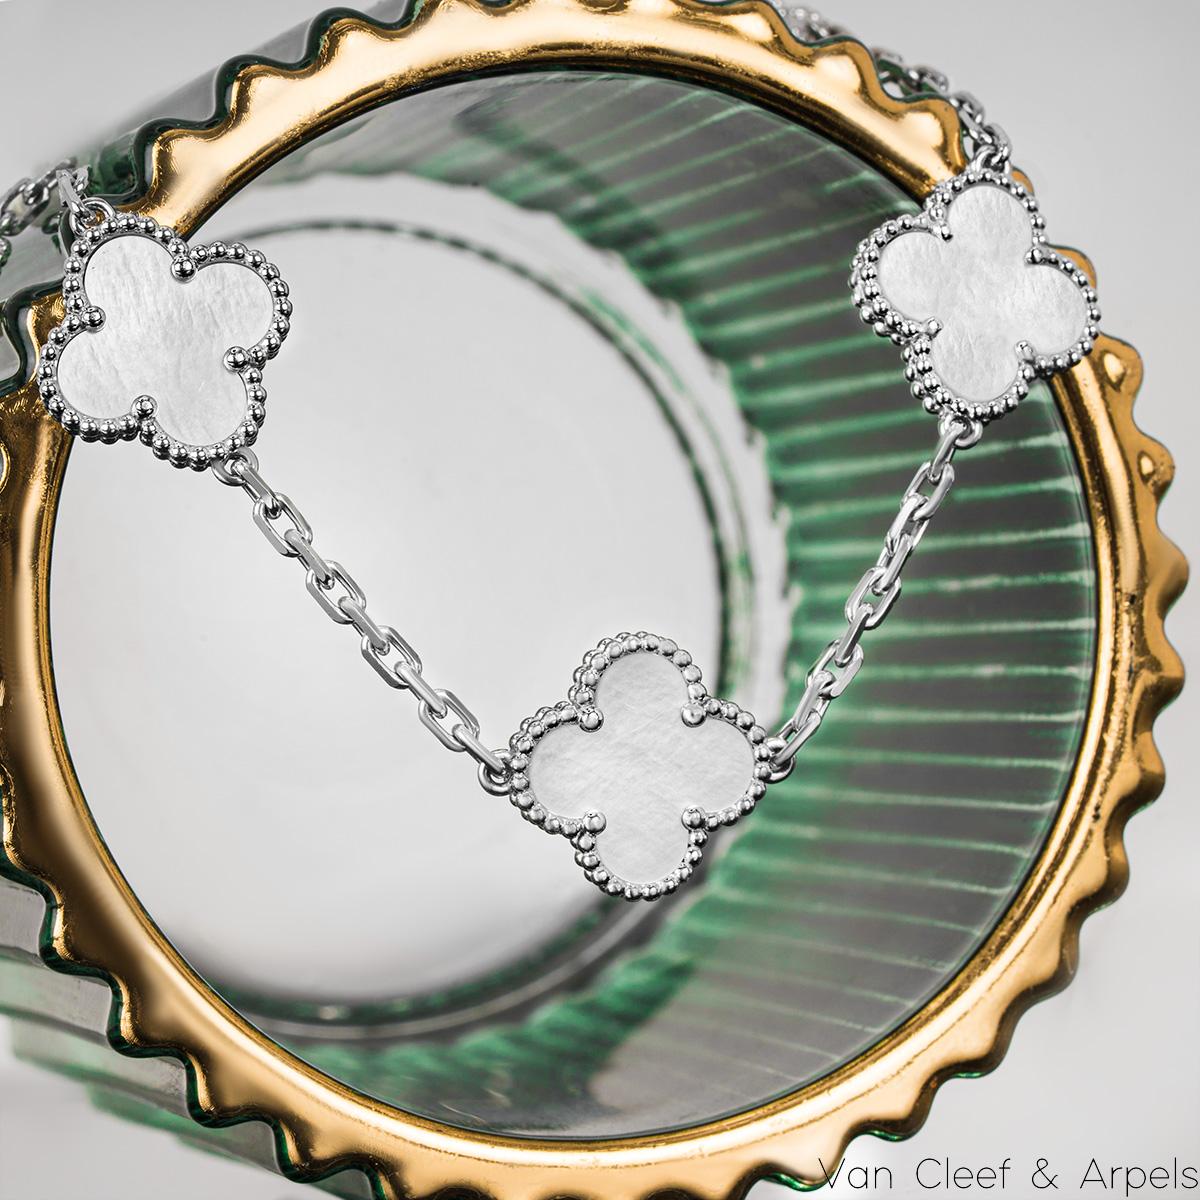 Van Cleef & Arpels White Gold Vintage Alhambra Bracelet VCARF48400 2